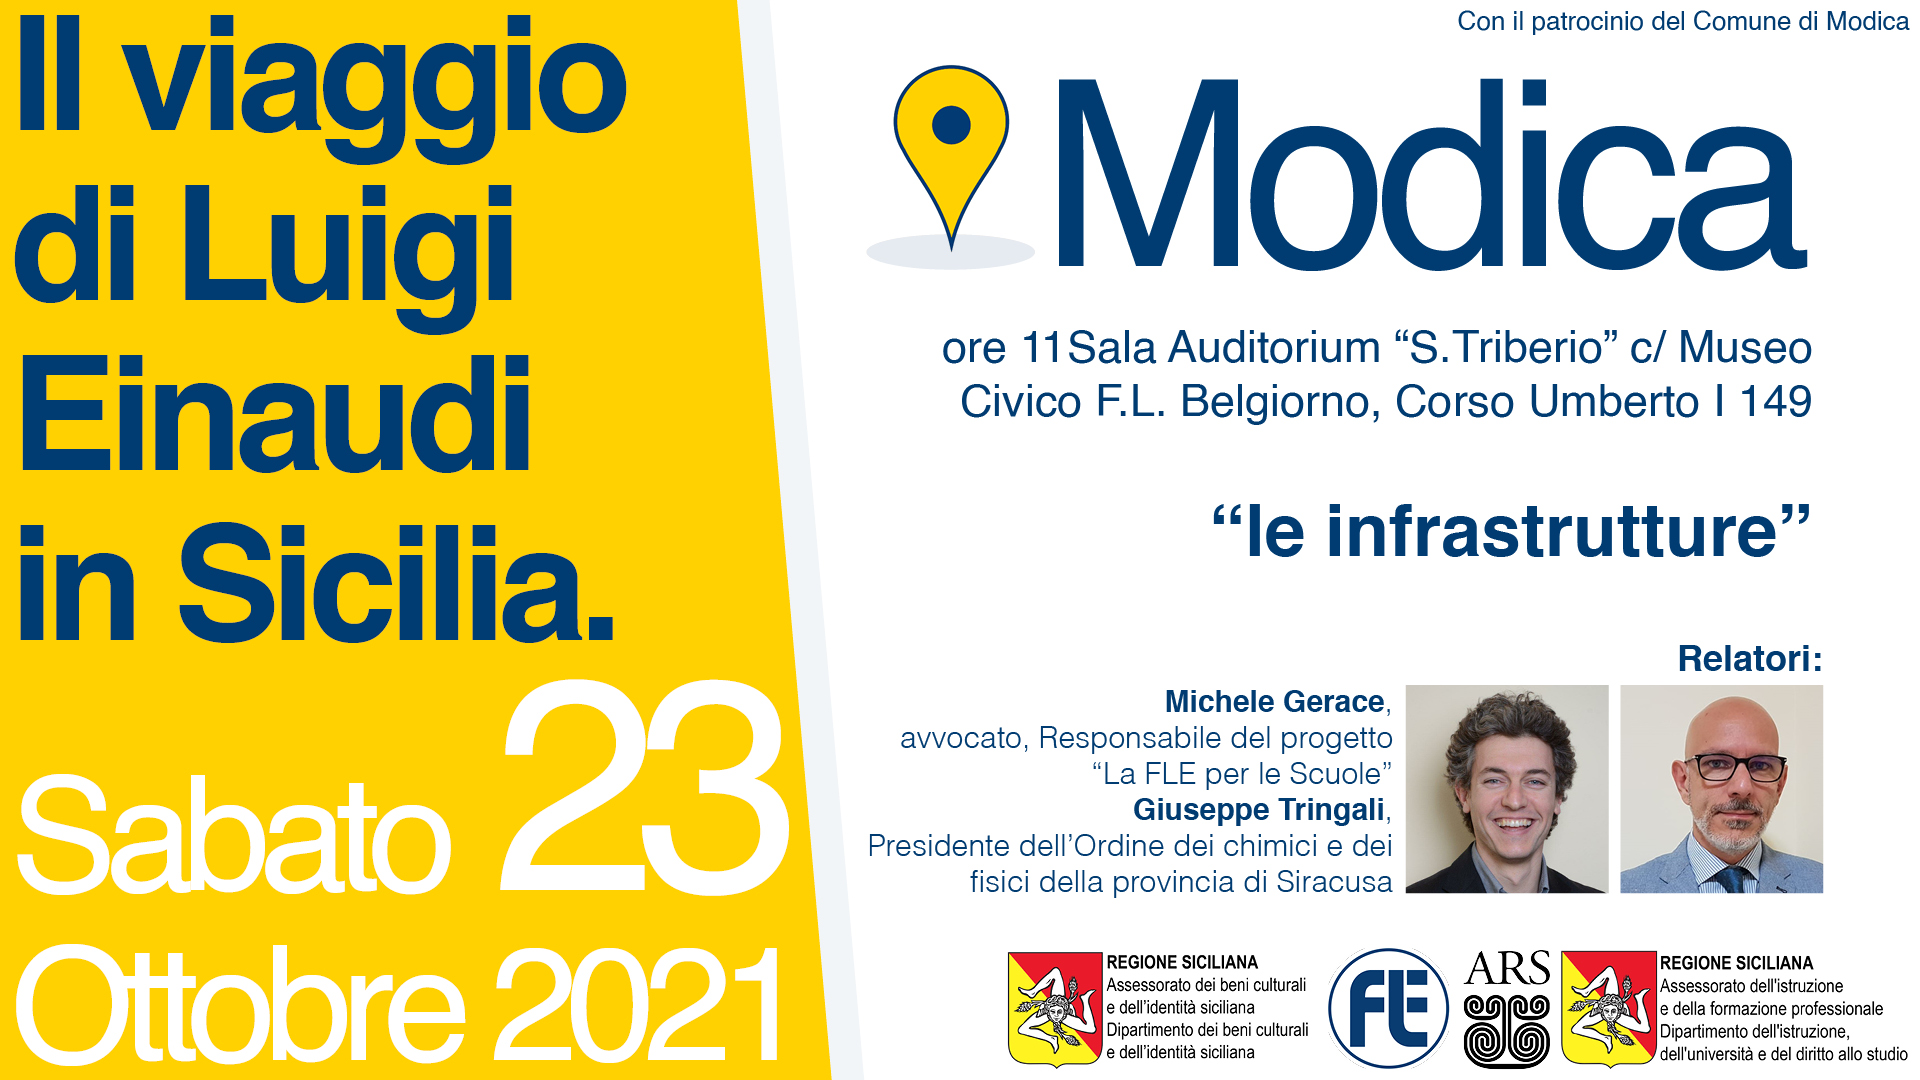 Il Viaggio di Luigi Einaudi in Sicilia: Modica – Le infrastrutture